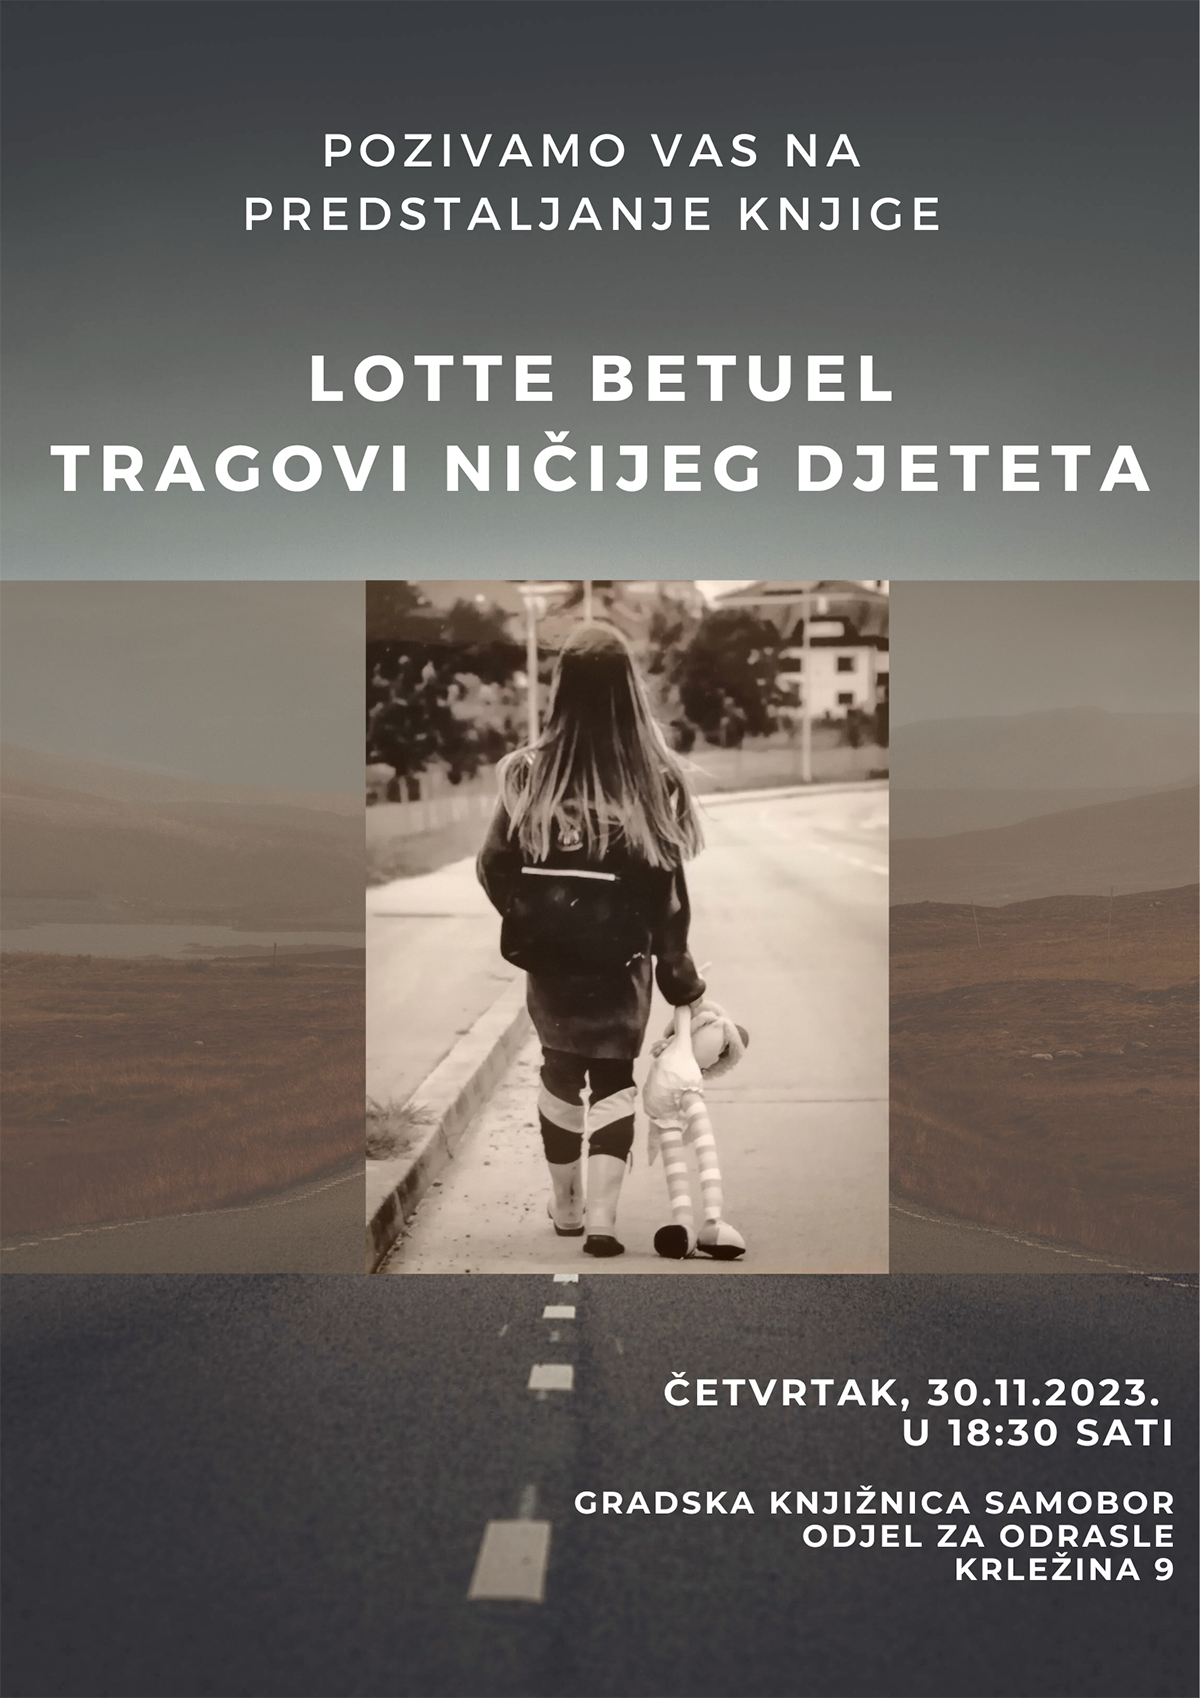 Najava predstavljanja knjige Lotte Betuel u samoborskoj knjinici